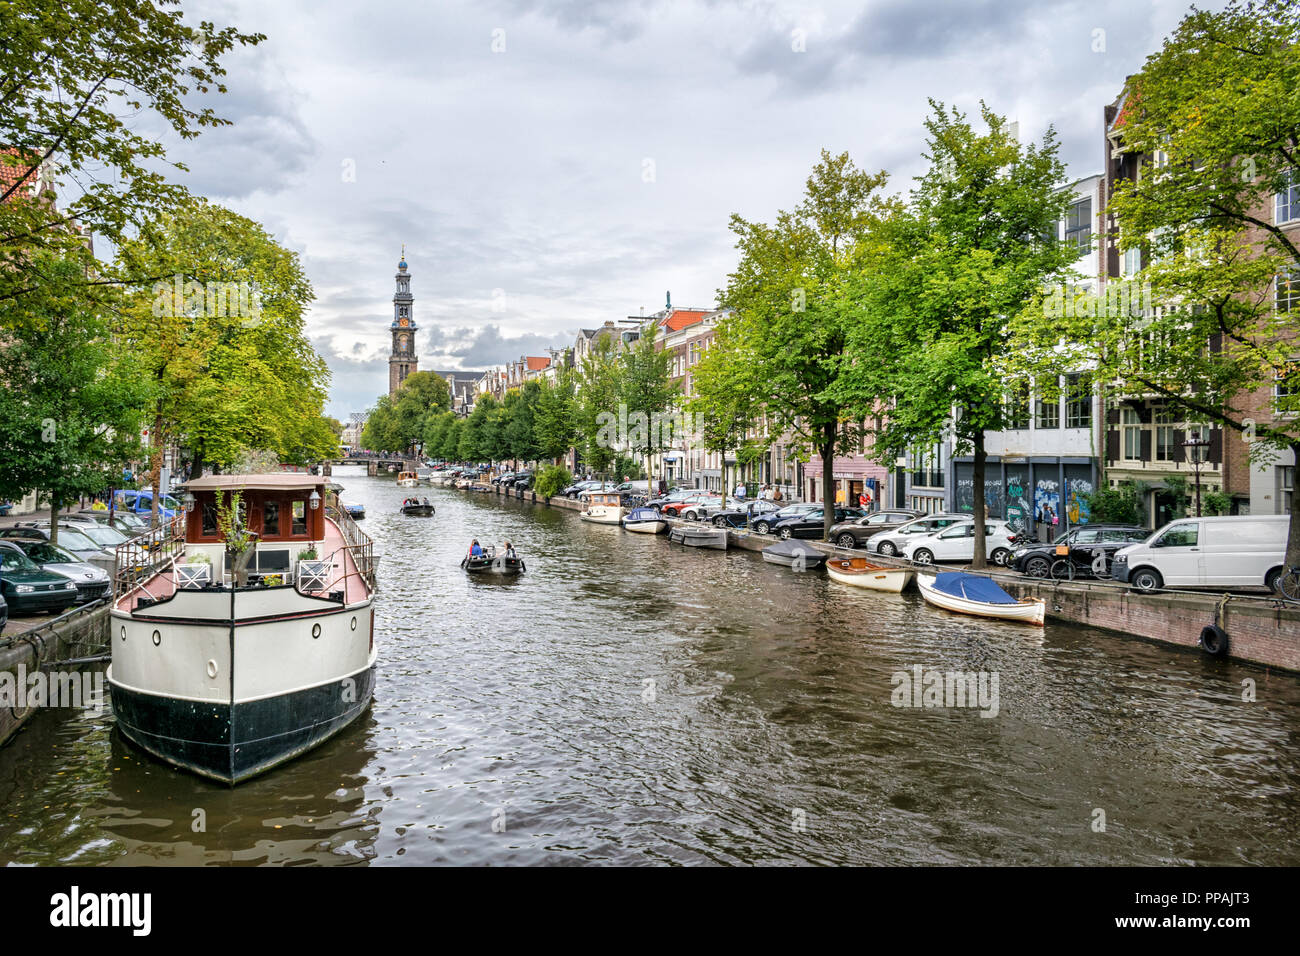 Das ist ein Bild von einer der vielen Grachten Amsterdams. Es gibt einen Großen Kanal Boot im Vordergrund und eine Kirche im Hintergrund Stockfoto